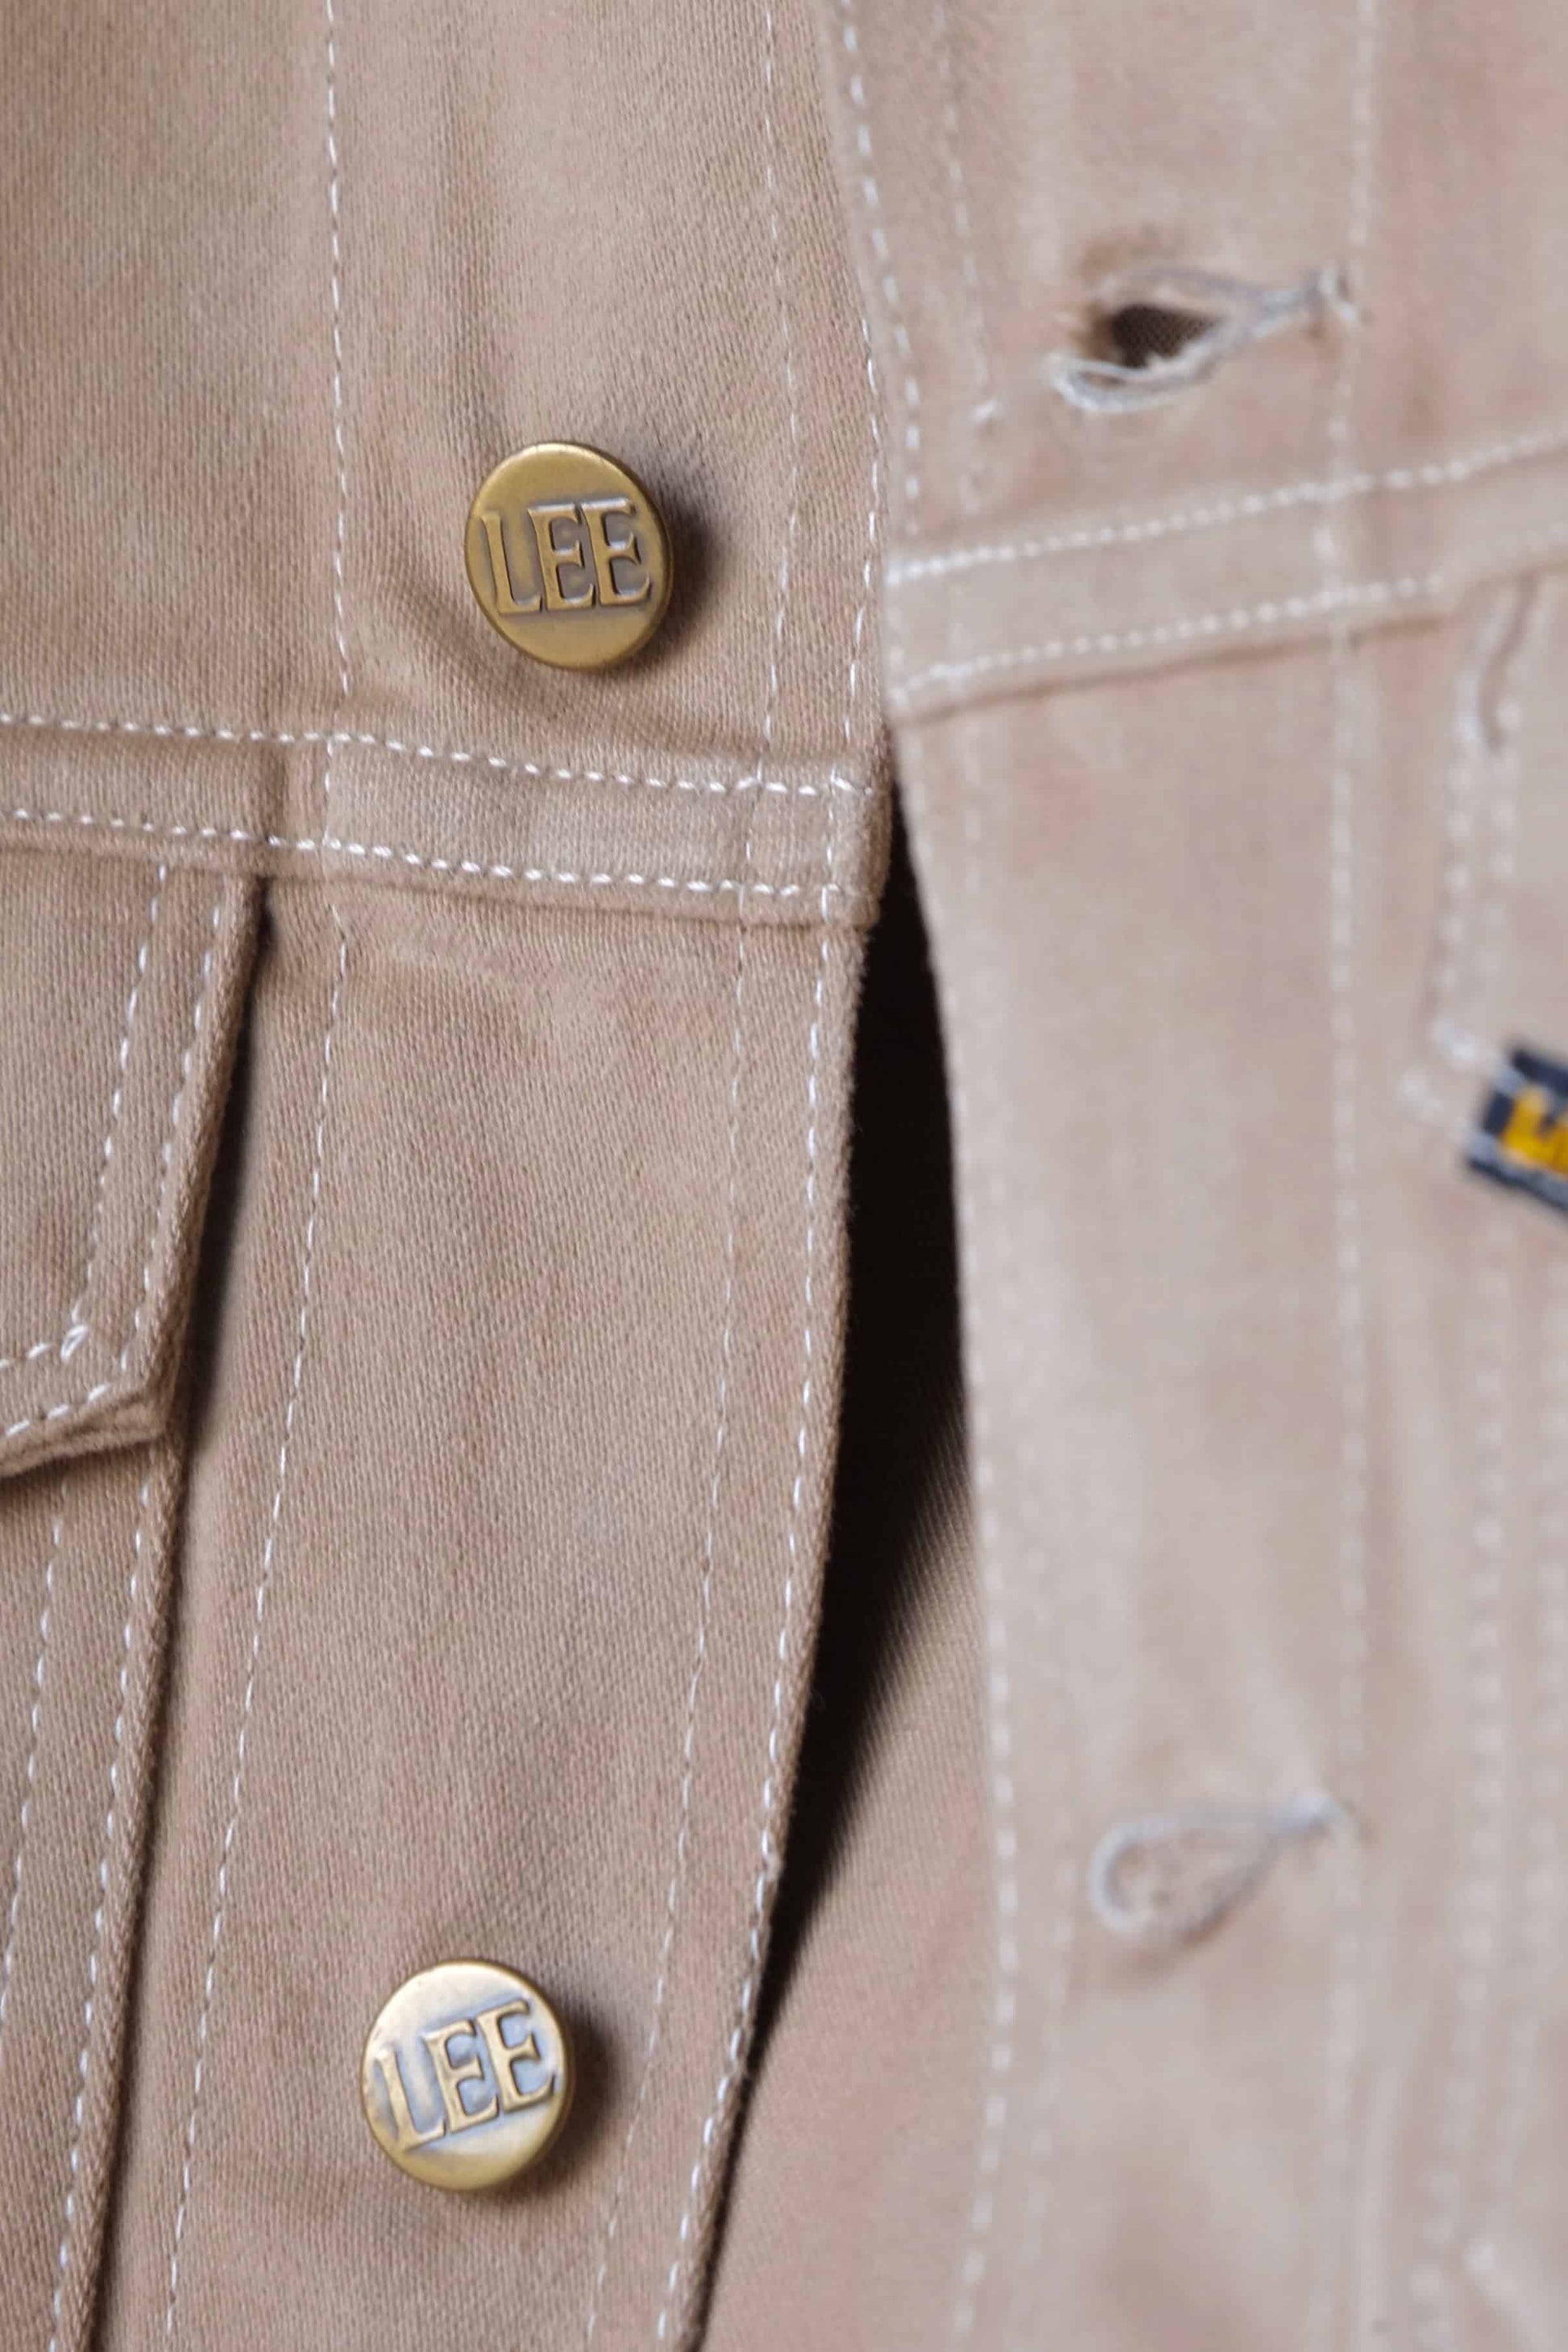 LEE Vintage 70's Denim Jacket embossed buttons